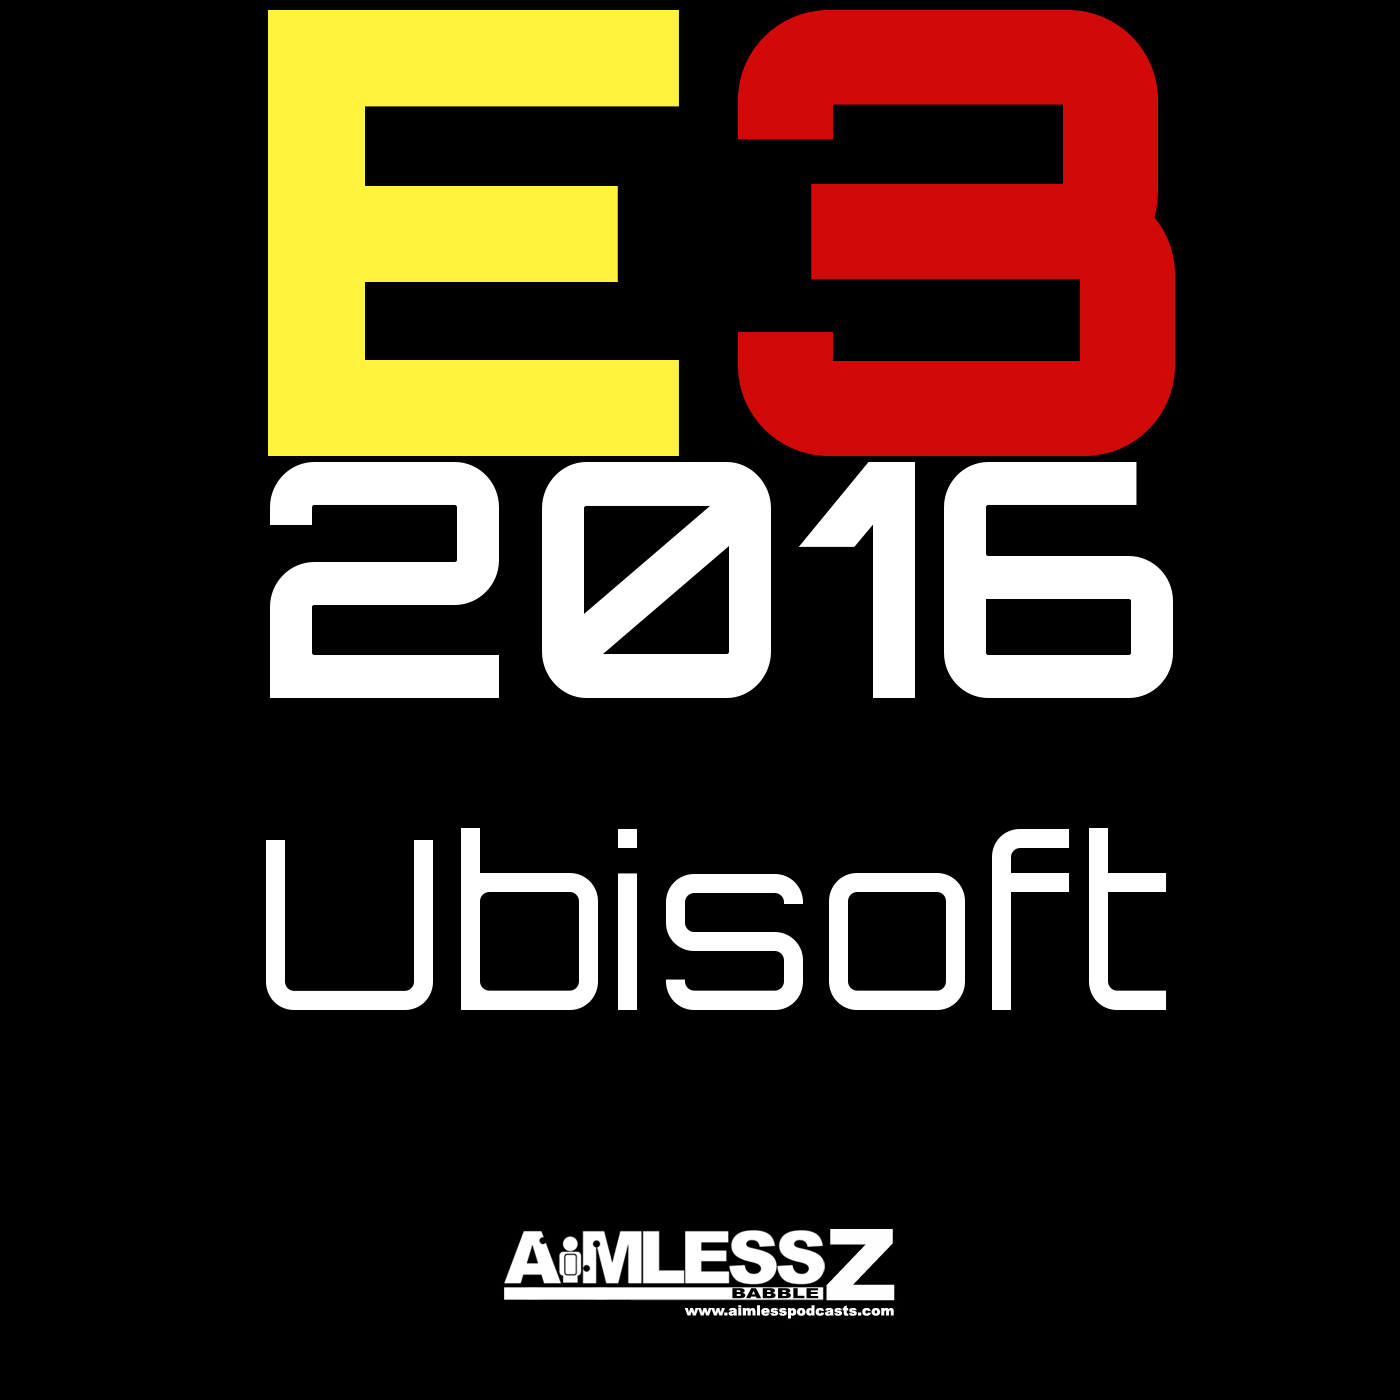 E3 2016: Ubisoft Press Briefing Impressions